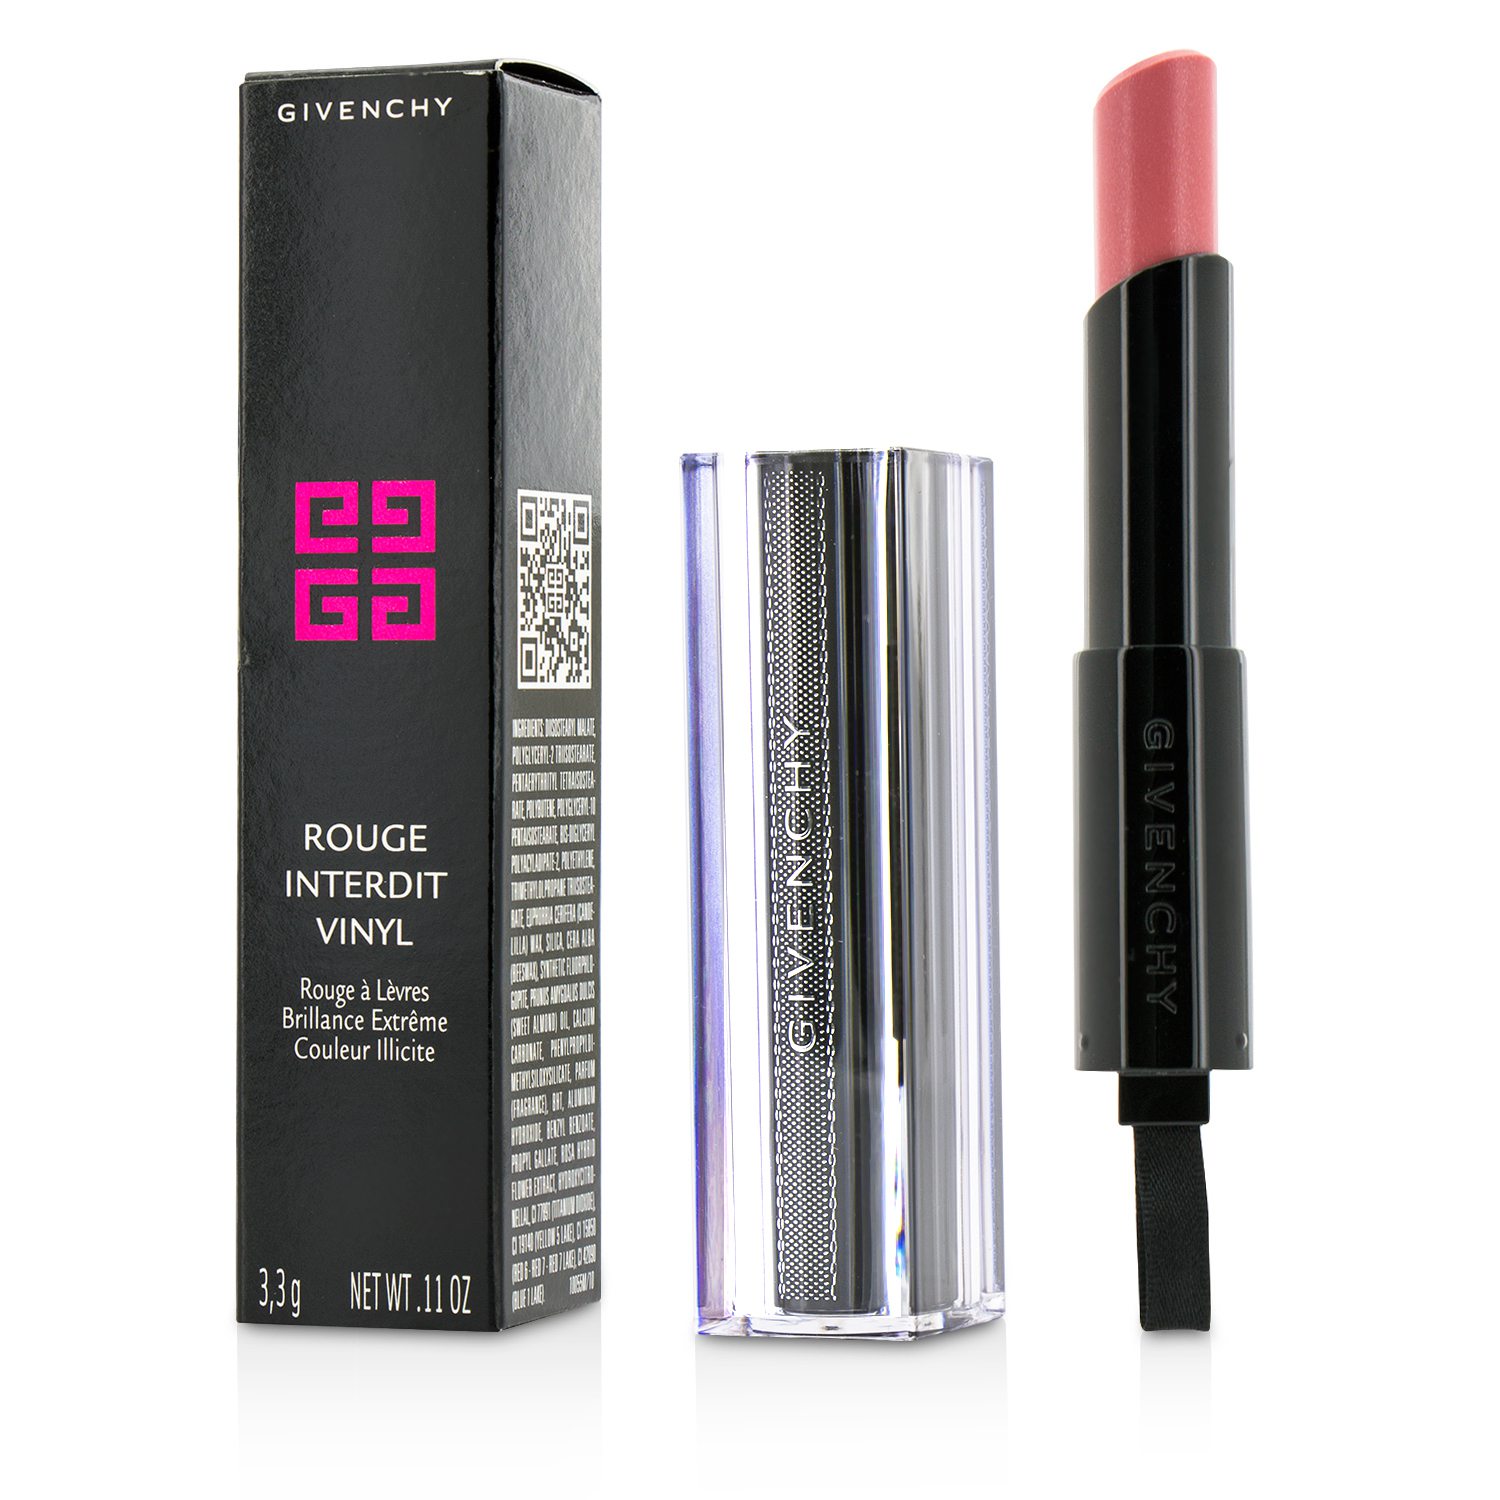 Rouge Interdit Vinyl Extreme Shine Lipstick - # 03 Rose Mutin Givenchy Image